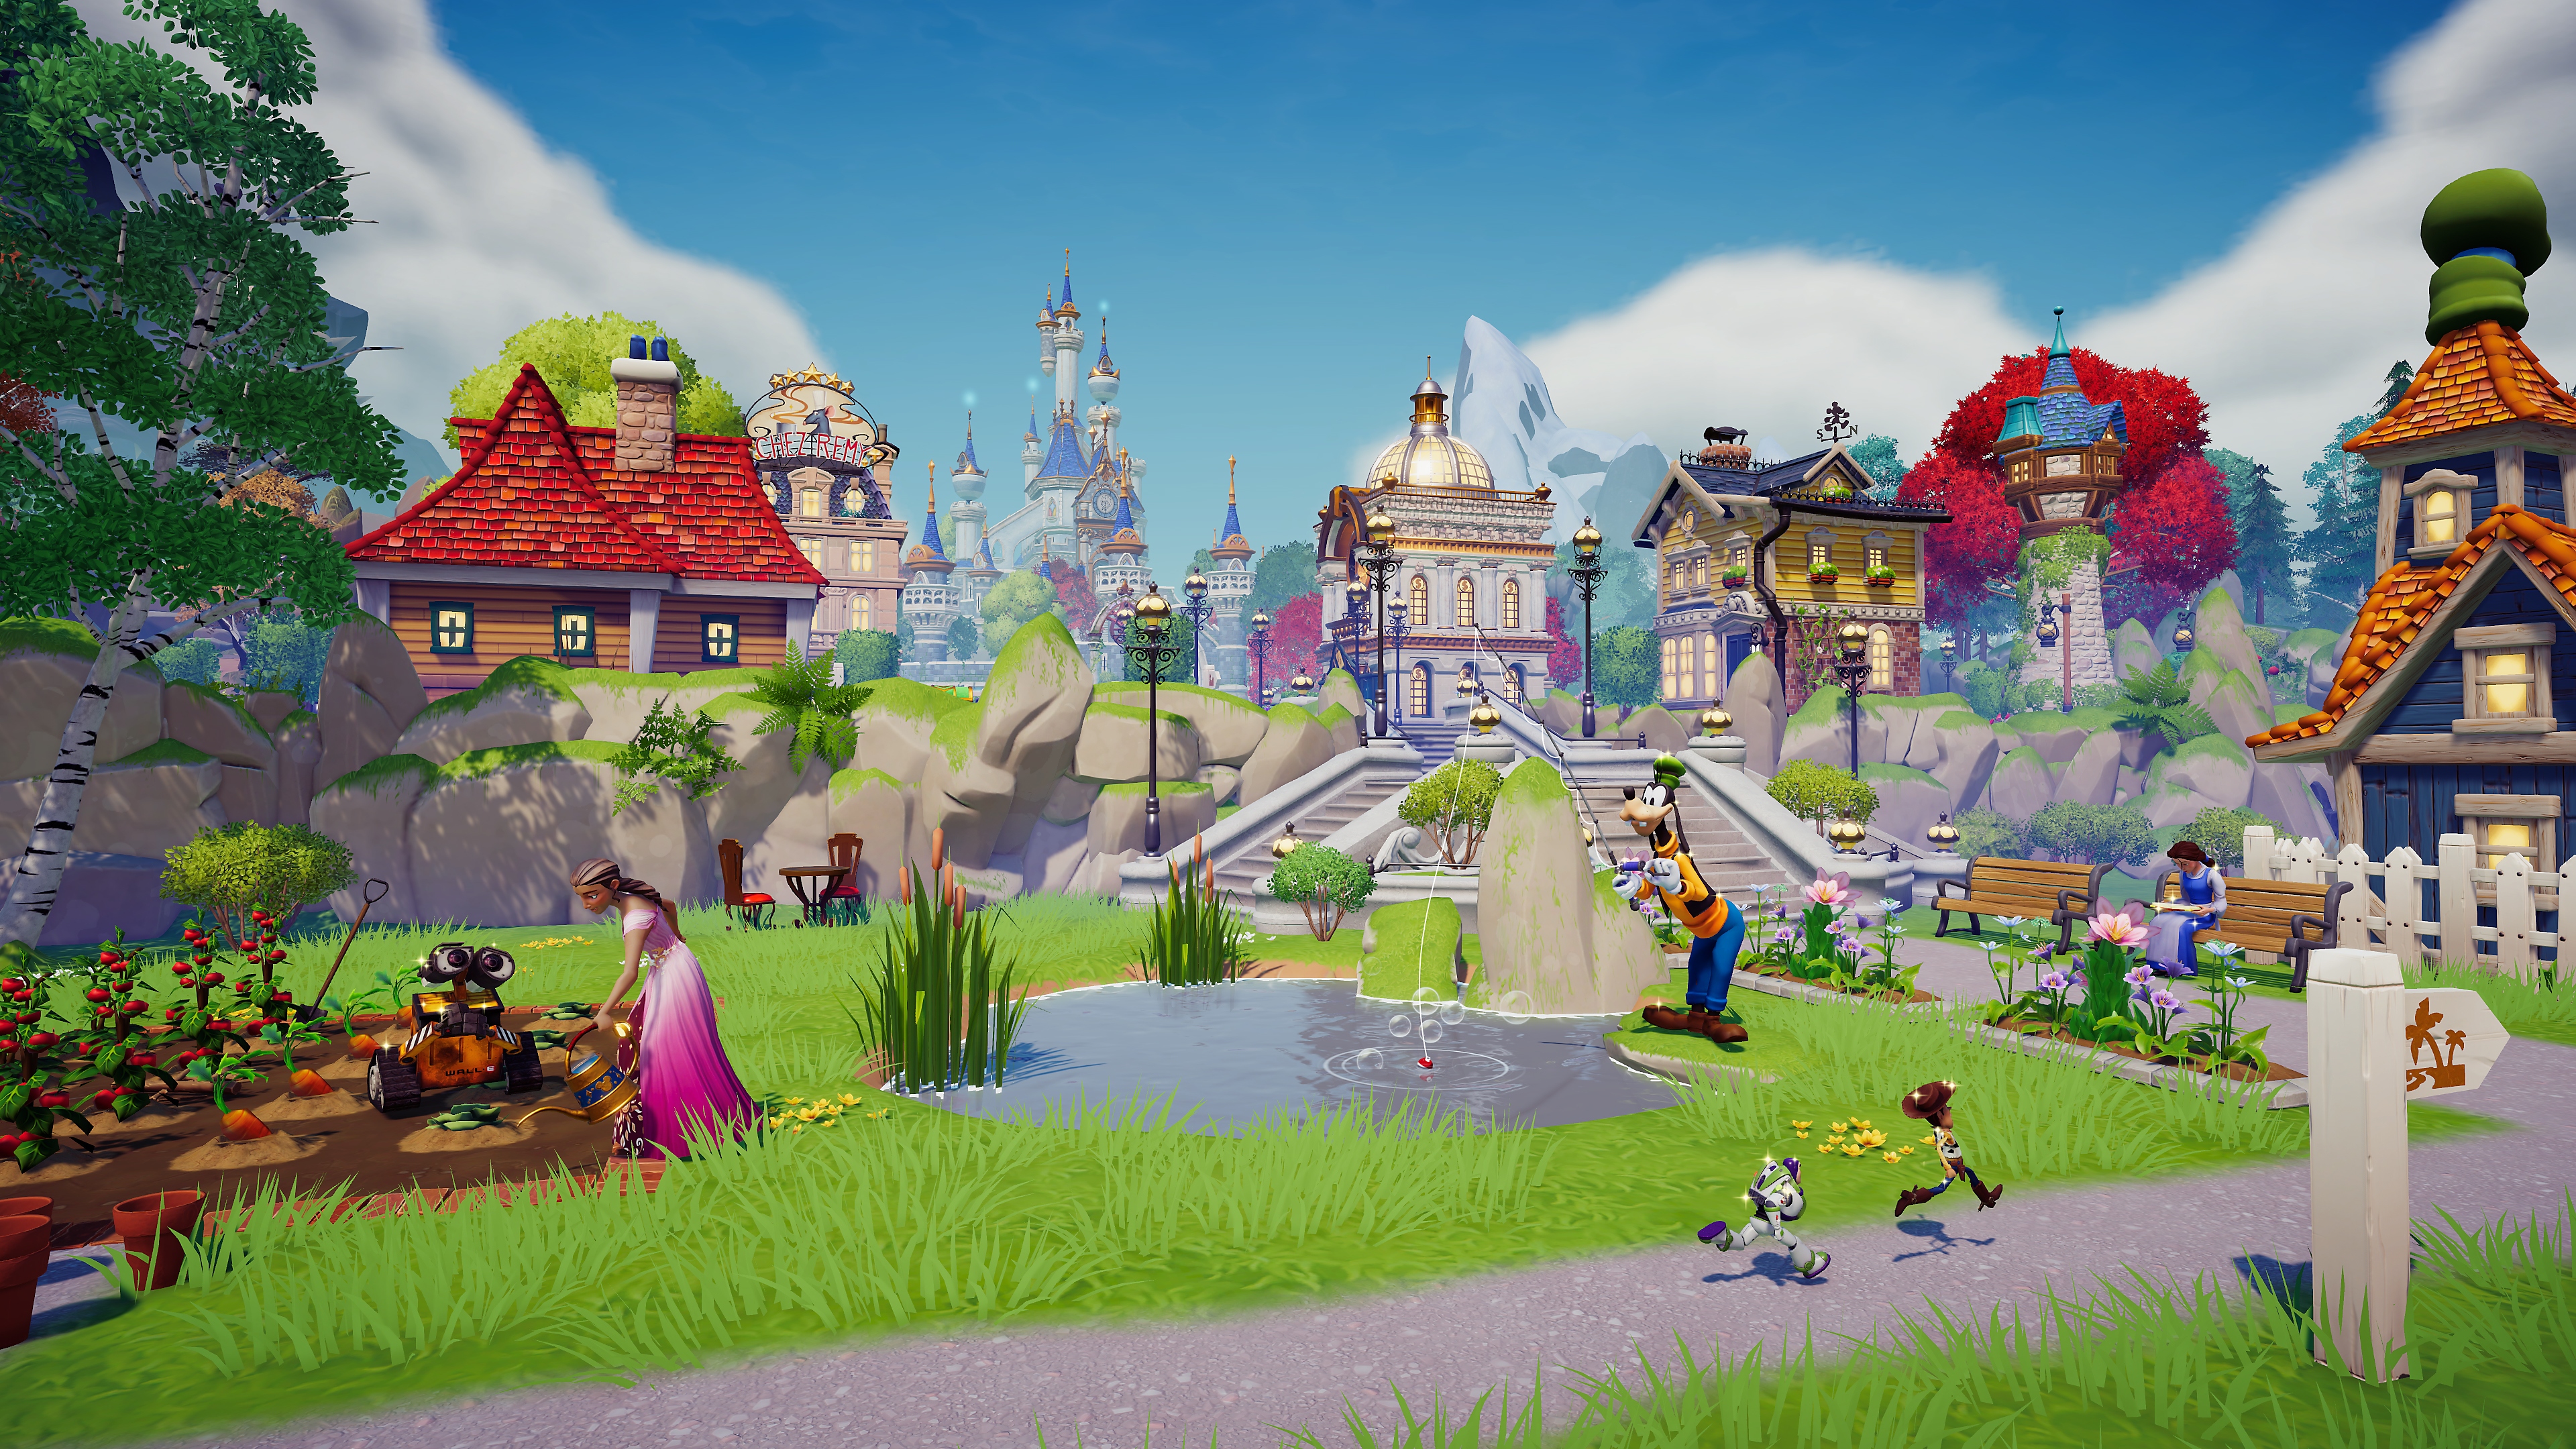 Captura de pantalla de Disney Dreamlight Valley enseñando una escena en una aldea